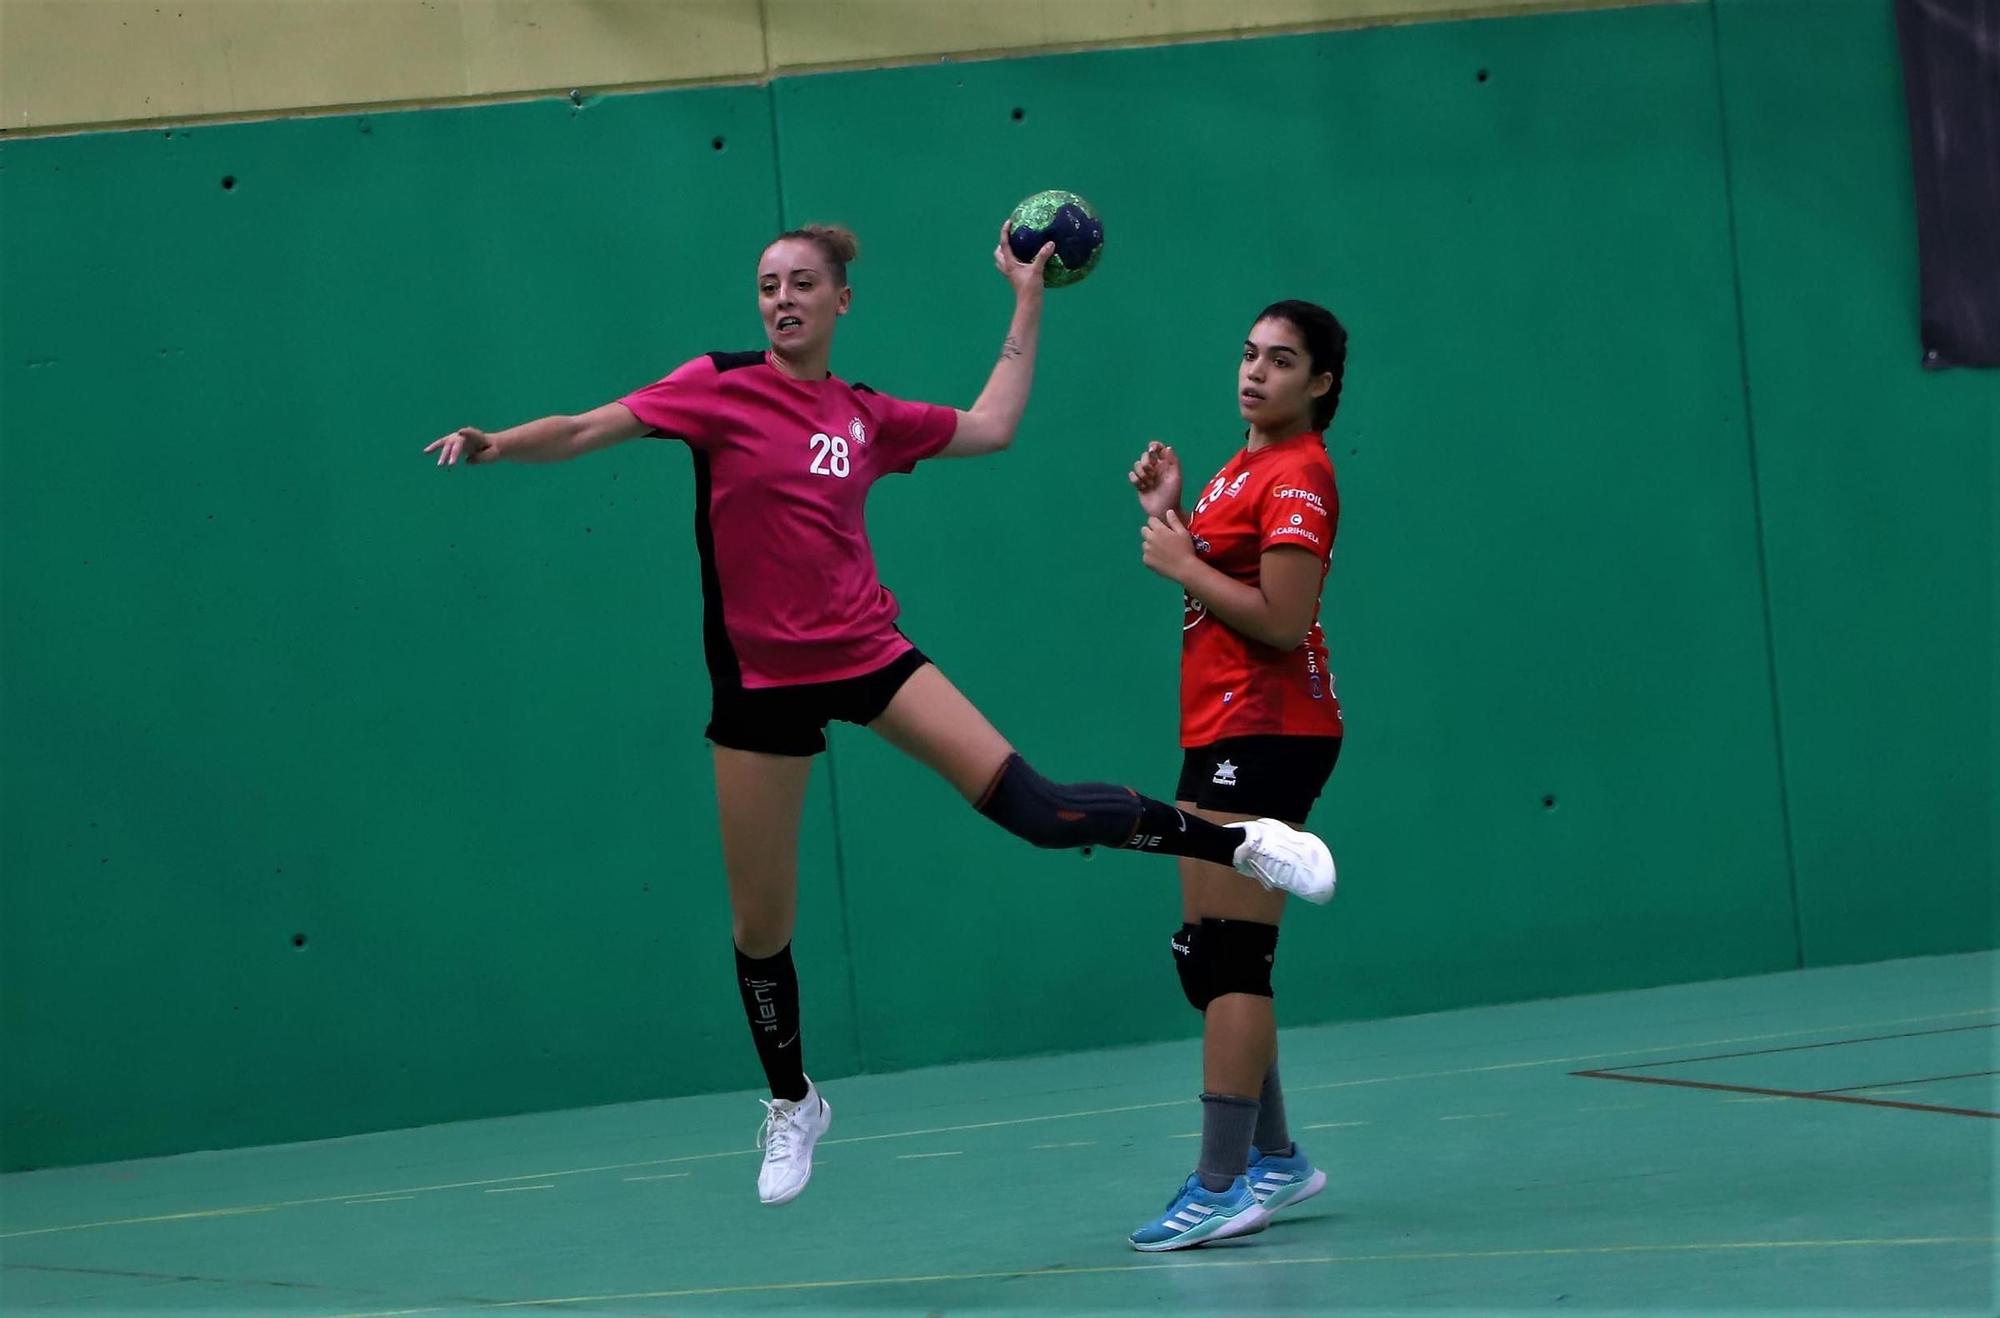 El Adesal - Deza Córdoba de balonmano femenino, en imágenes